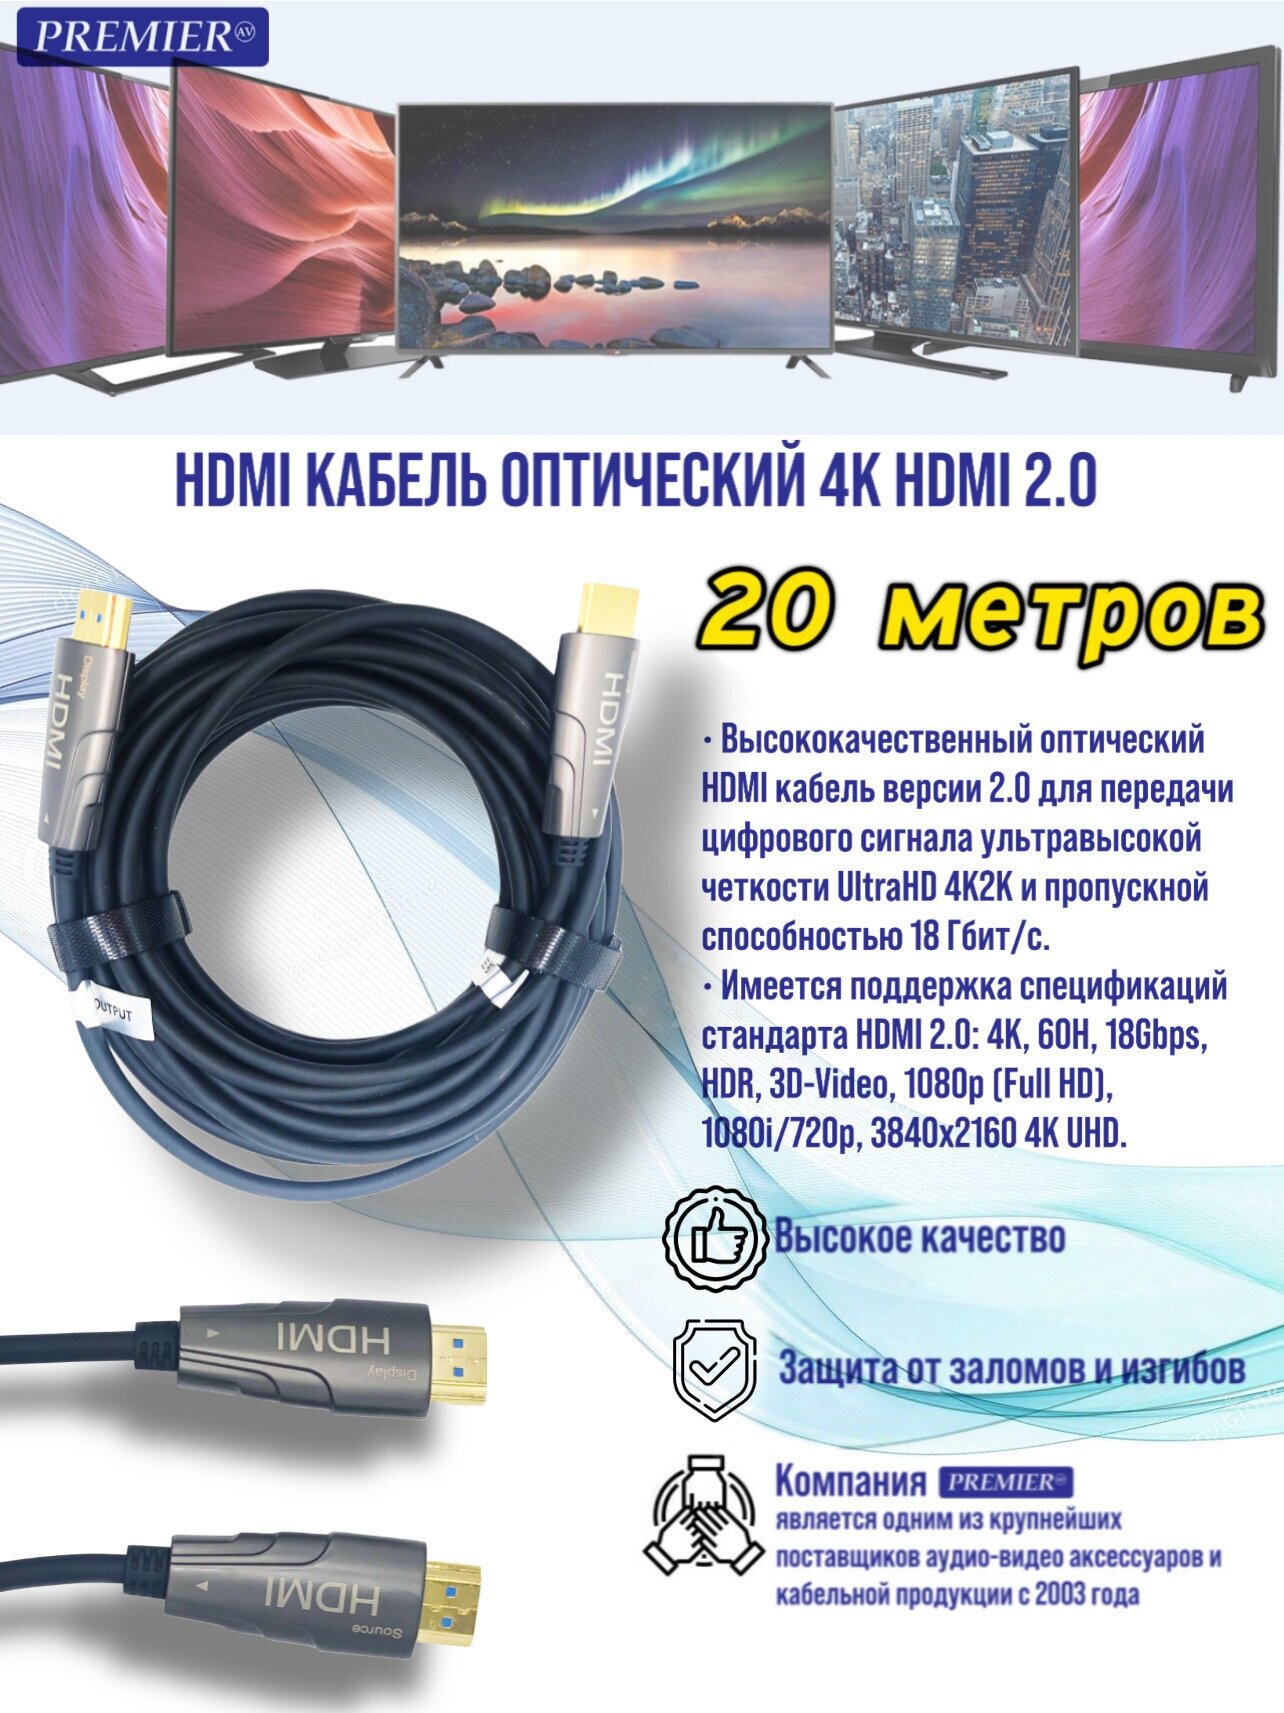 HDMI кабель оптический 4K HDMI 2.0 Active Optical Cable 20 метров